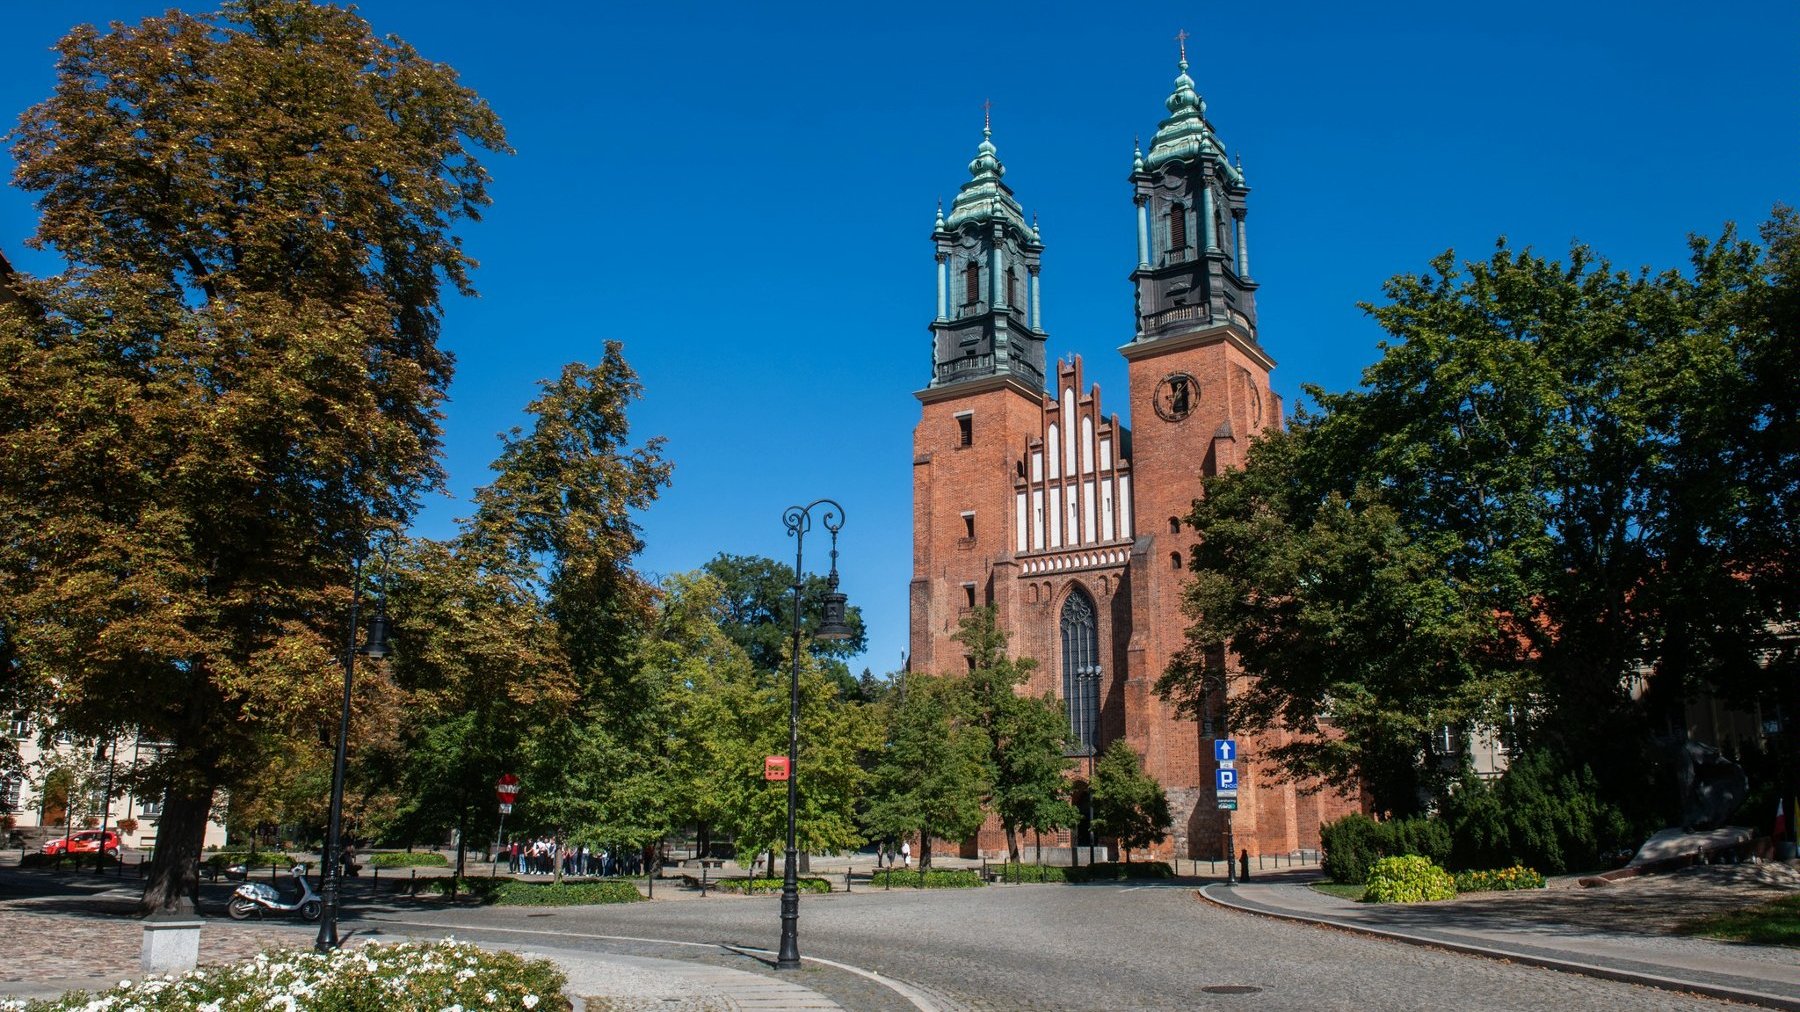 Zdjęcie przedstawia widok na katedrę poznańską, drogę oraz zieleń.